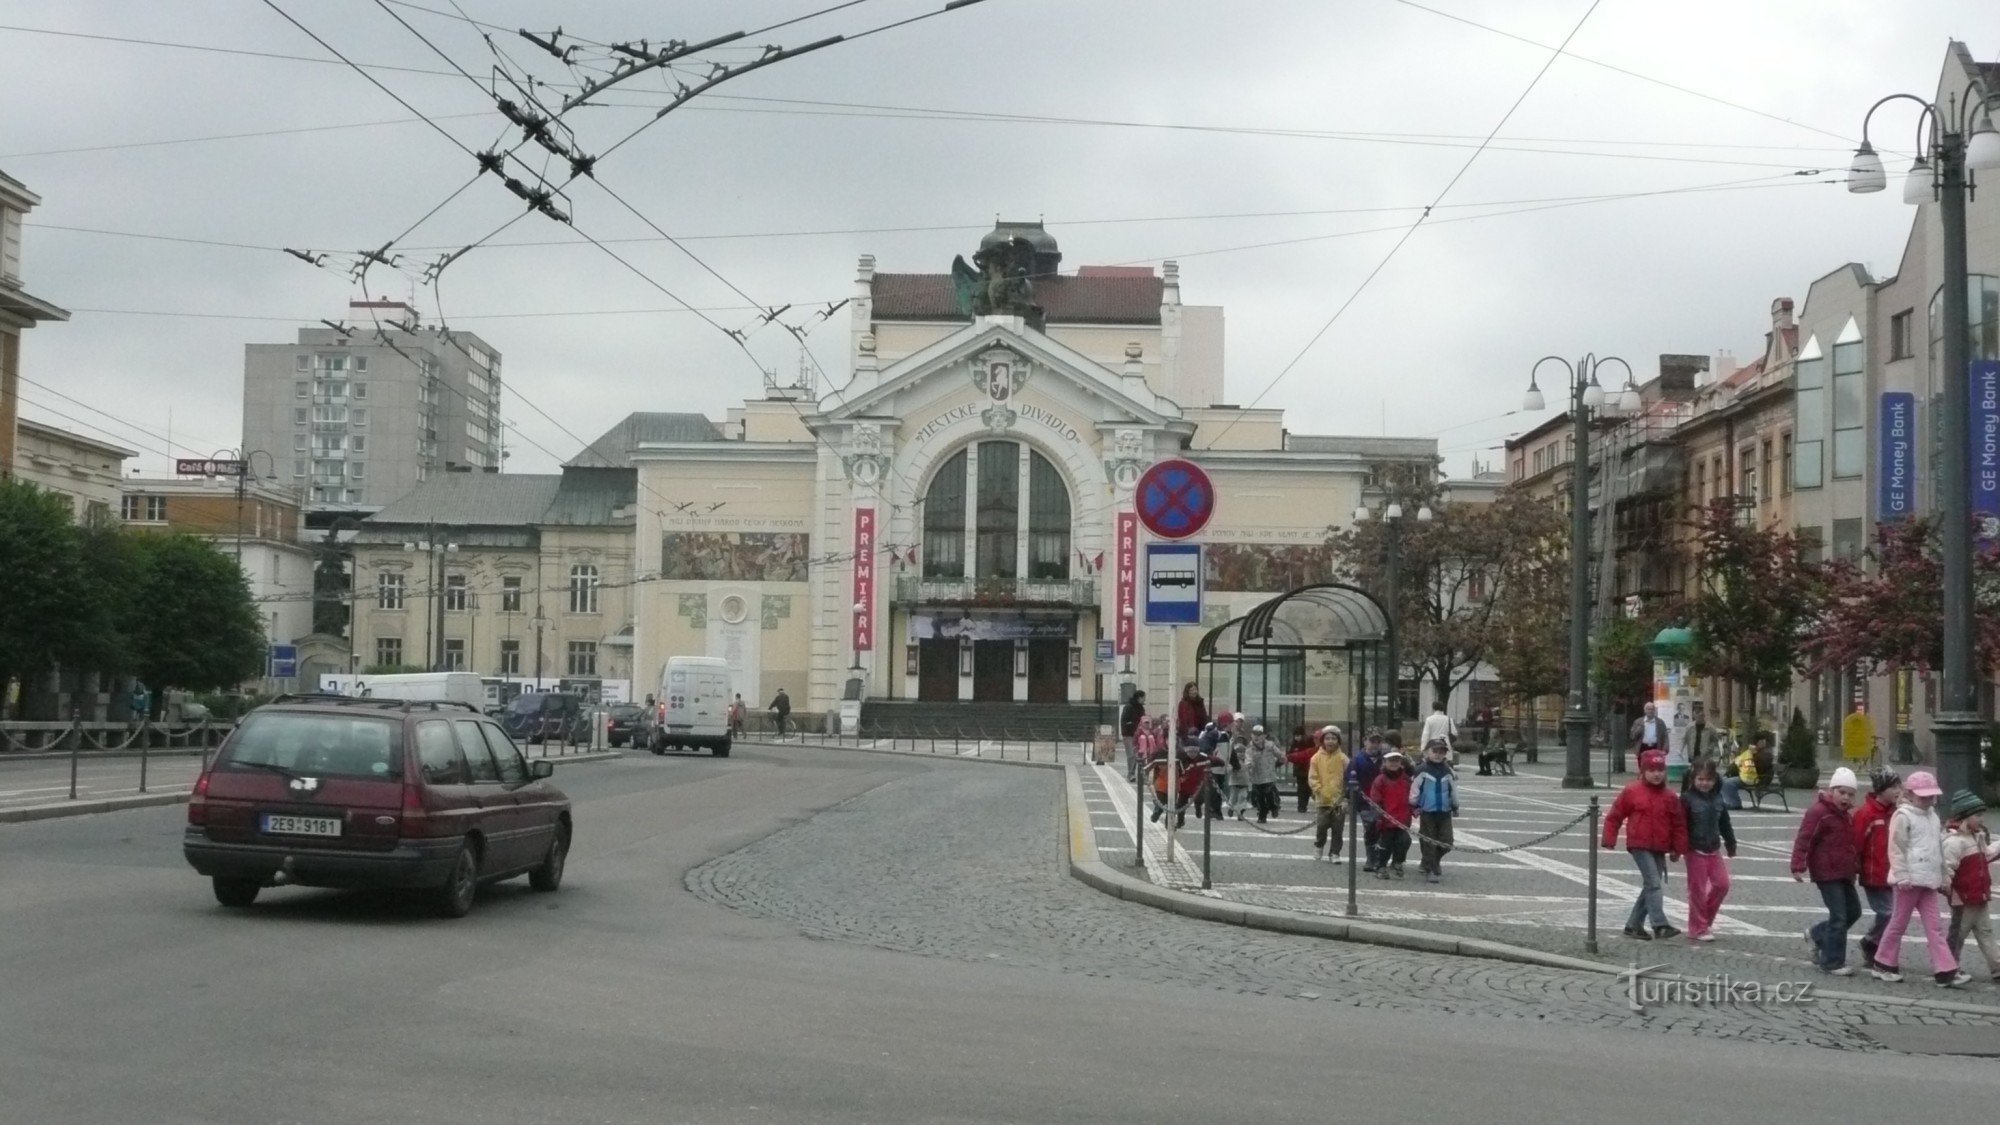 Mestno gledališče